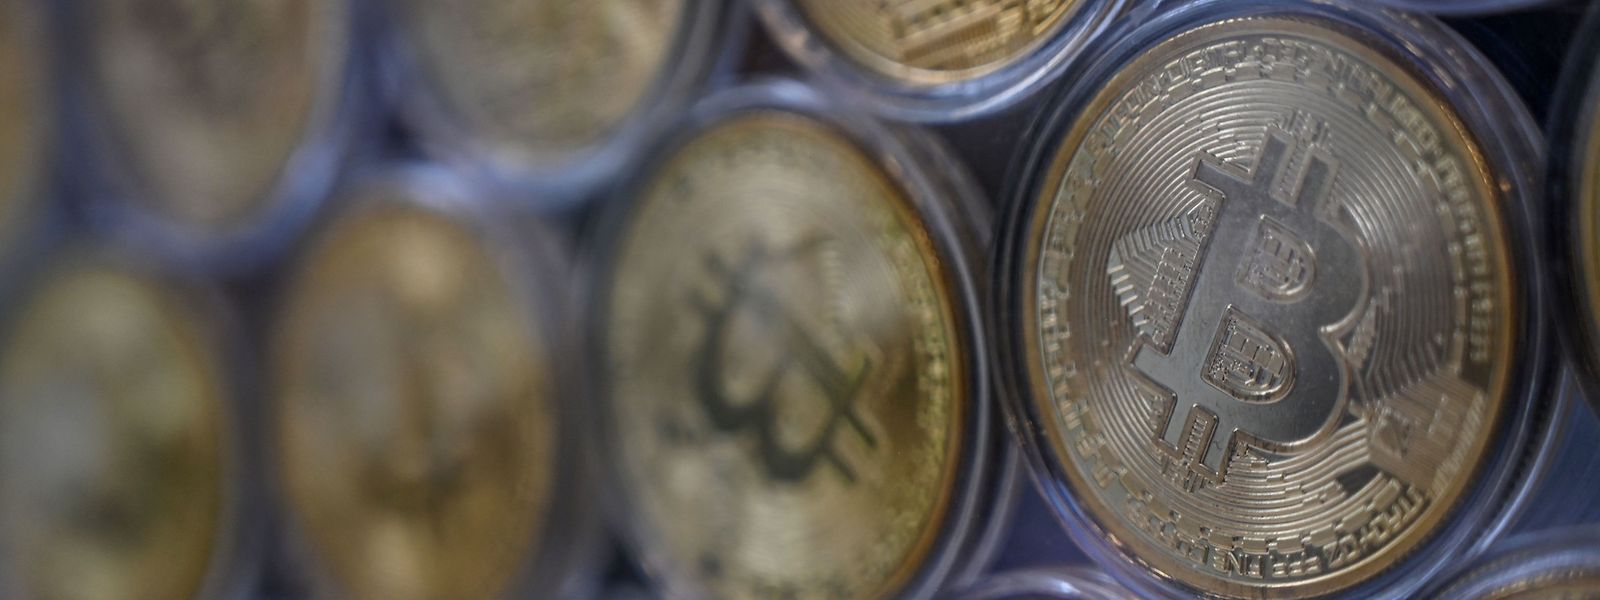 Seit dem Rekordhoch von etwa 69.000 Dollar ist der Bitcoin um mehr als 60 Prozent eingebrochen.